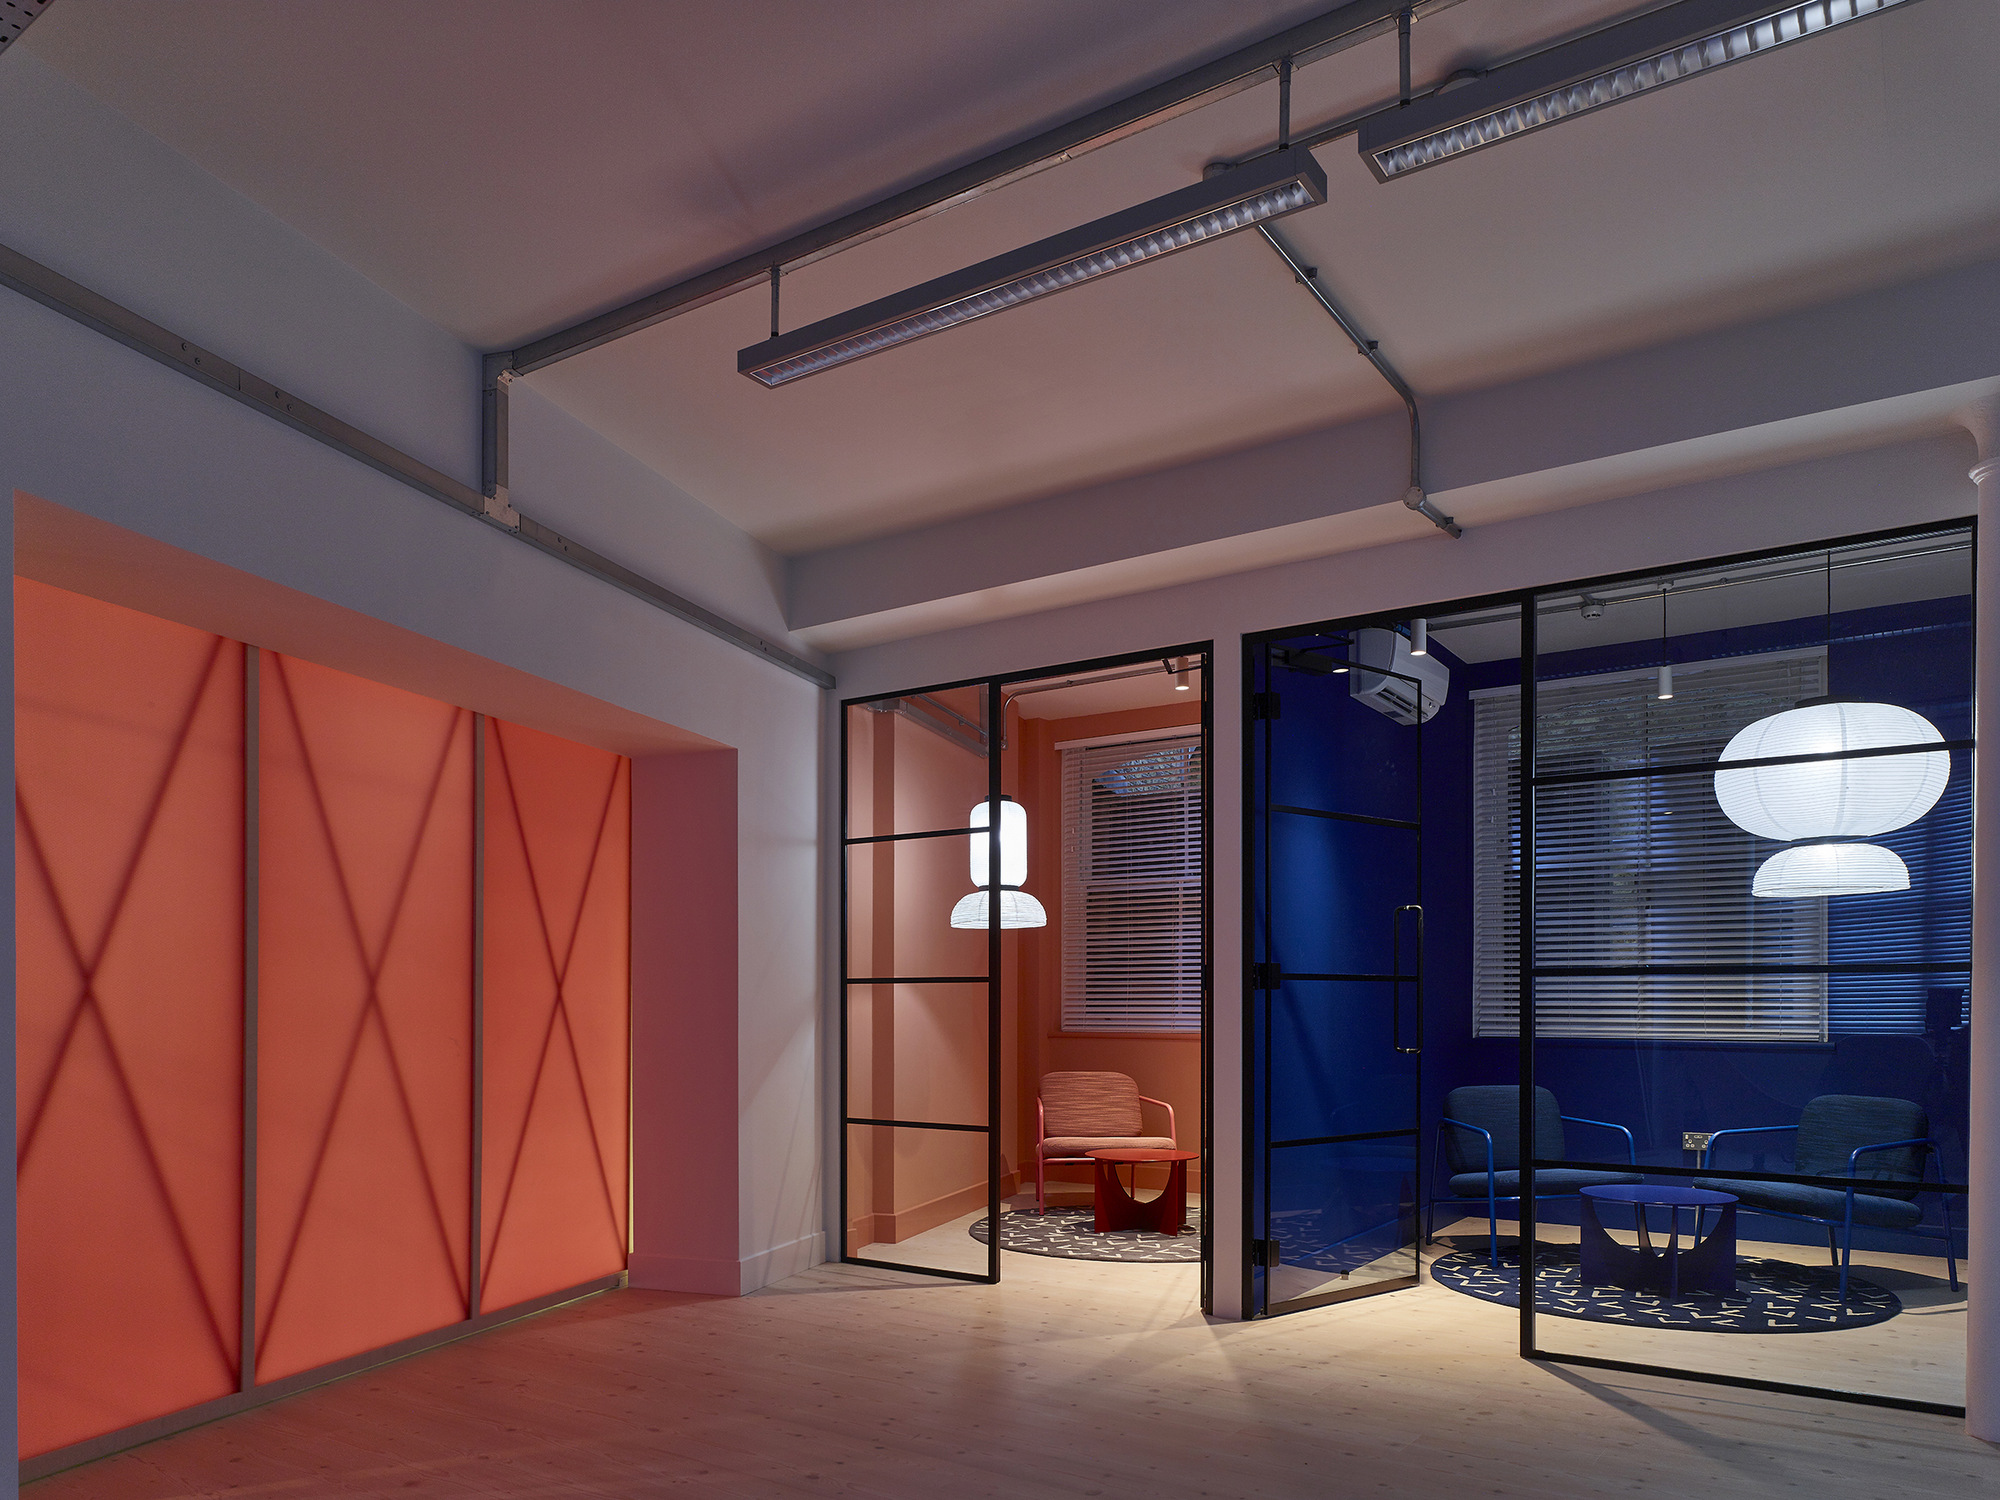 图片[6]|Idean办公室——伦敦|ART-Arrakis | 建筑室内设计的创新与灵感